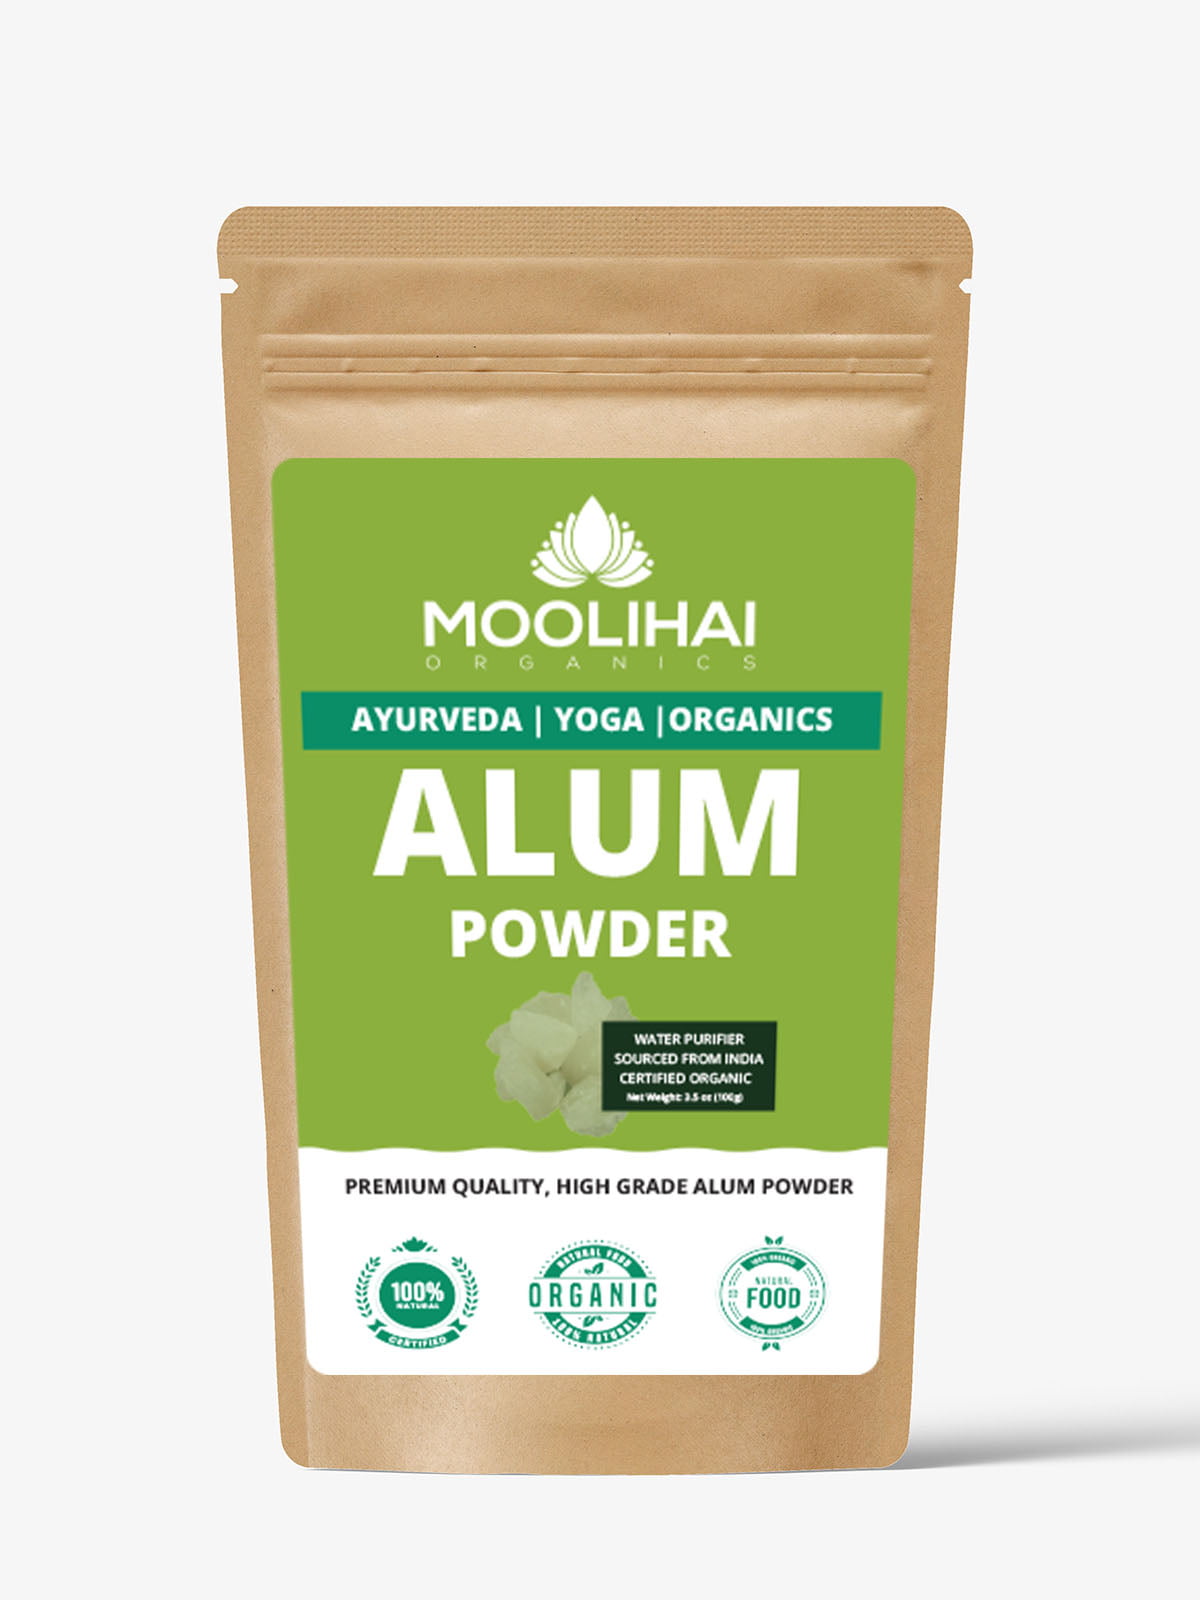 Premium Quality Alum Powder | Food Grade Alum Powder - Moolihai.com